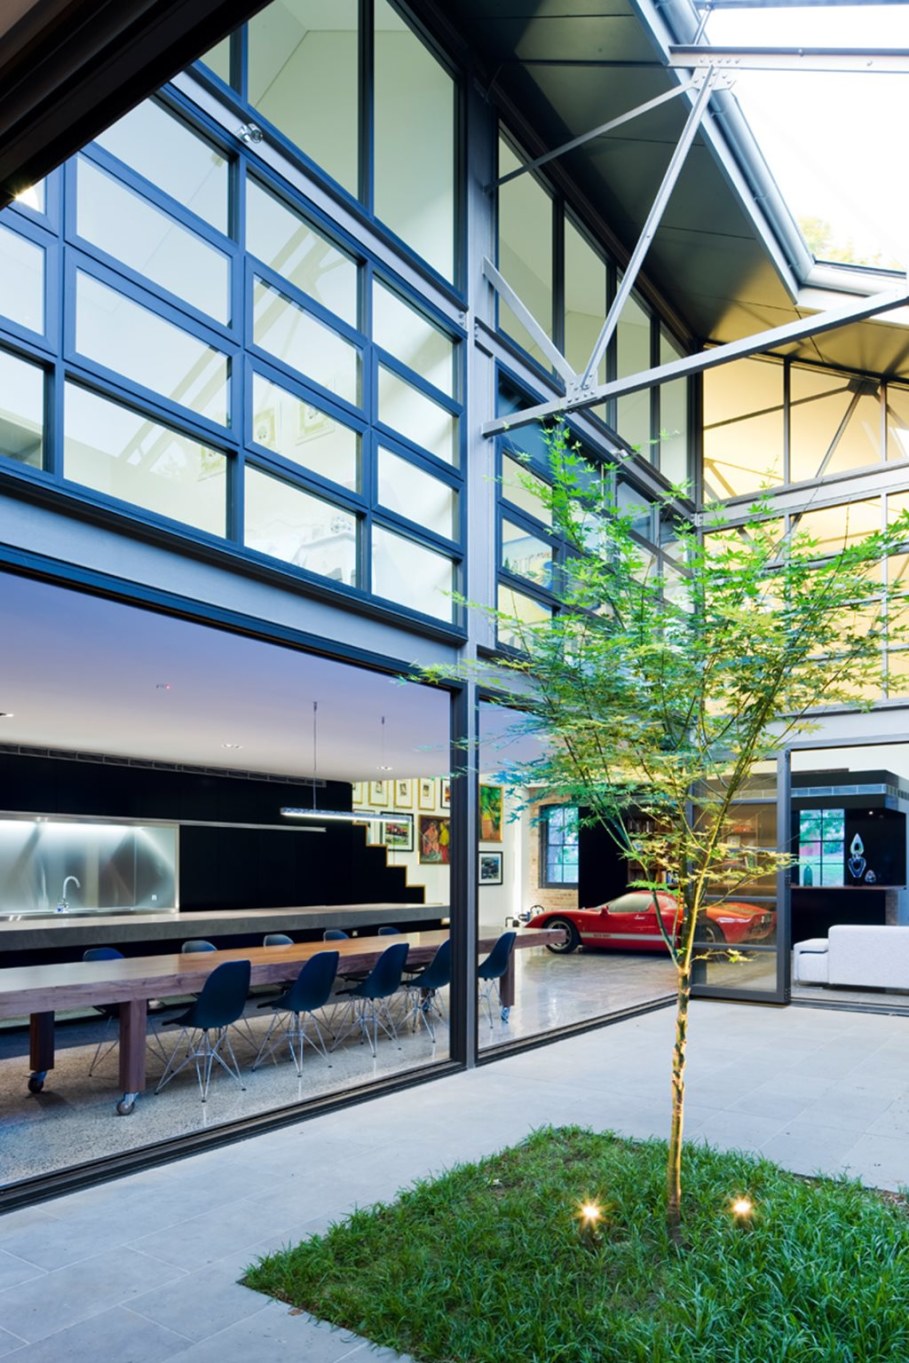 Grand loft house in Australia by Corben Architects studio - Interior